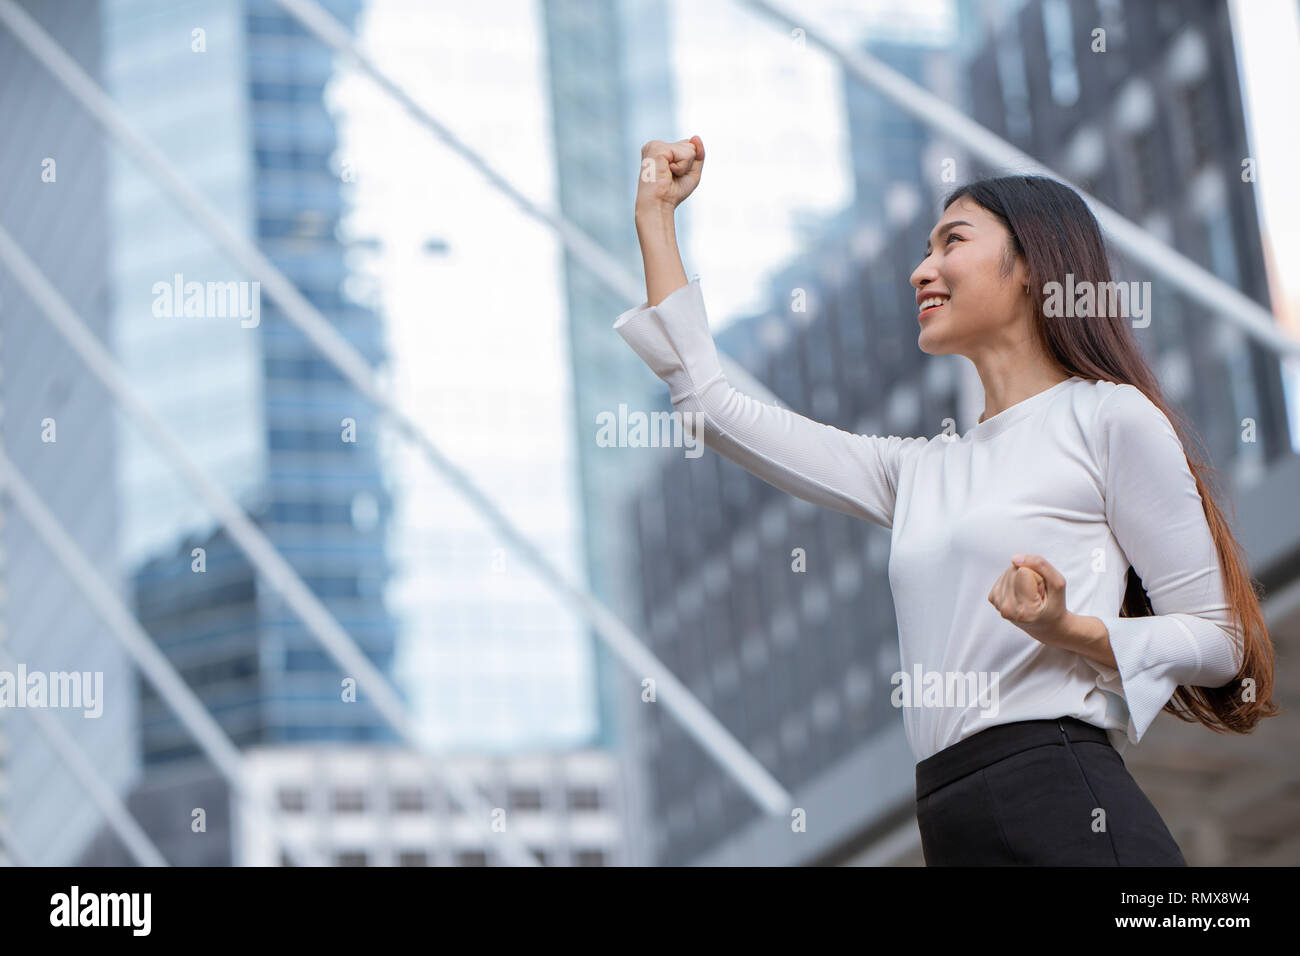 Las mujeres aumentan su mano para negocios ganador éxito concepto con el edificio de oficinas de fondo. Foto de stock